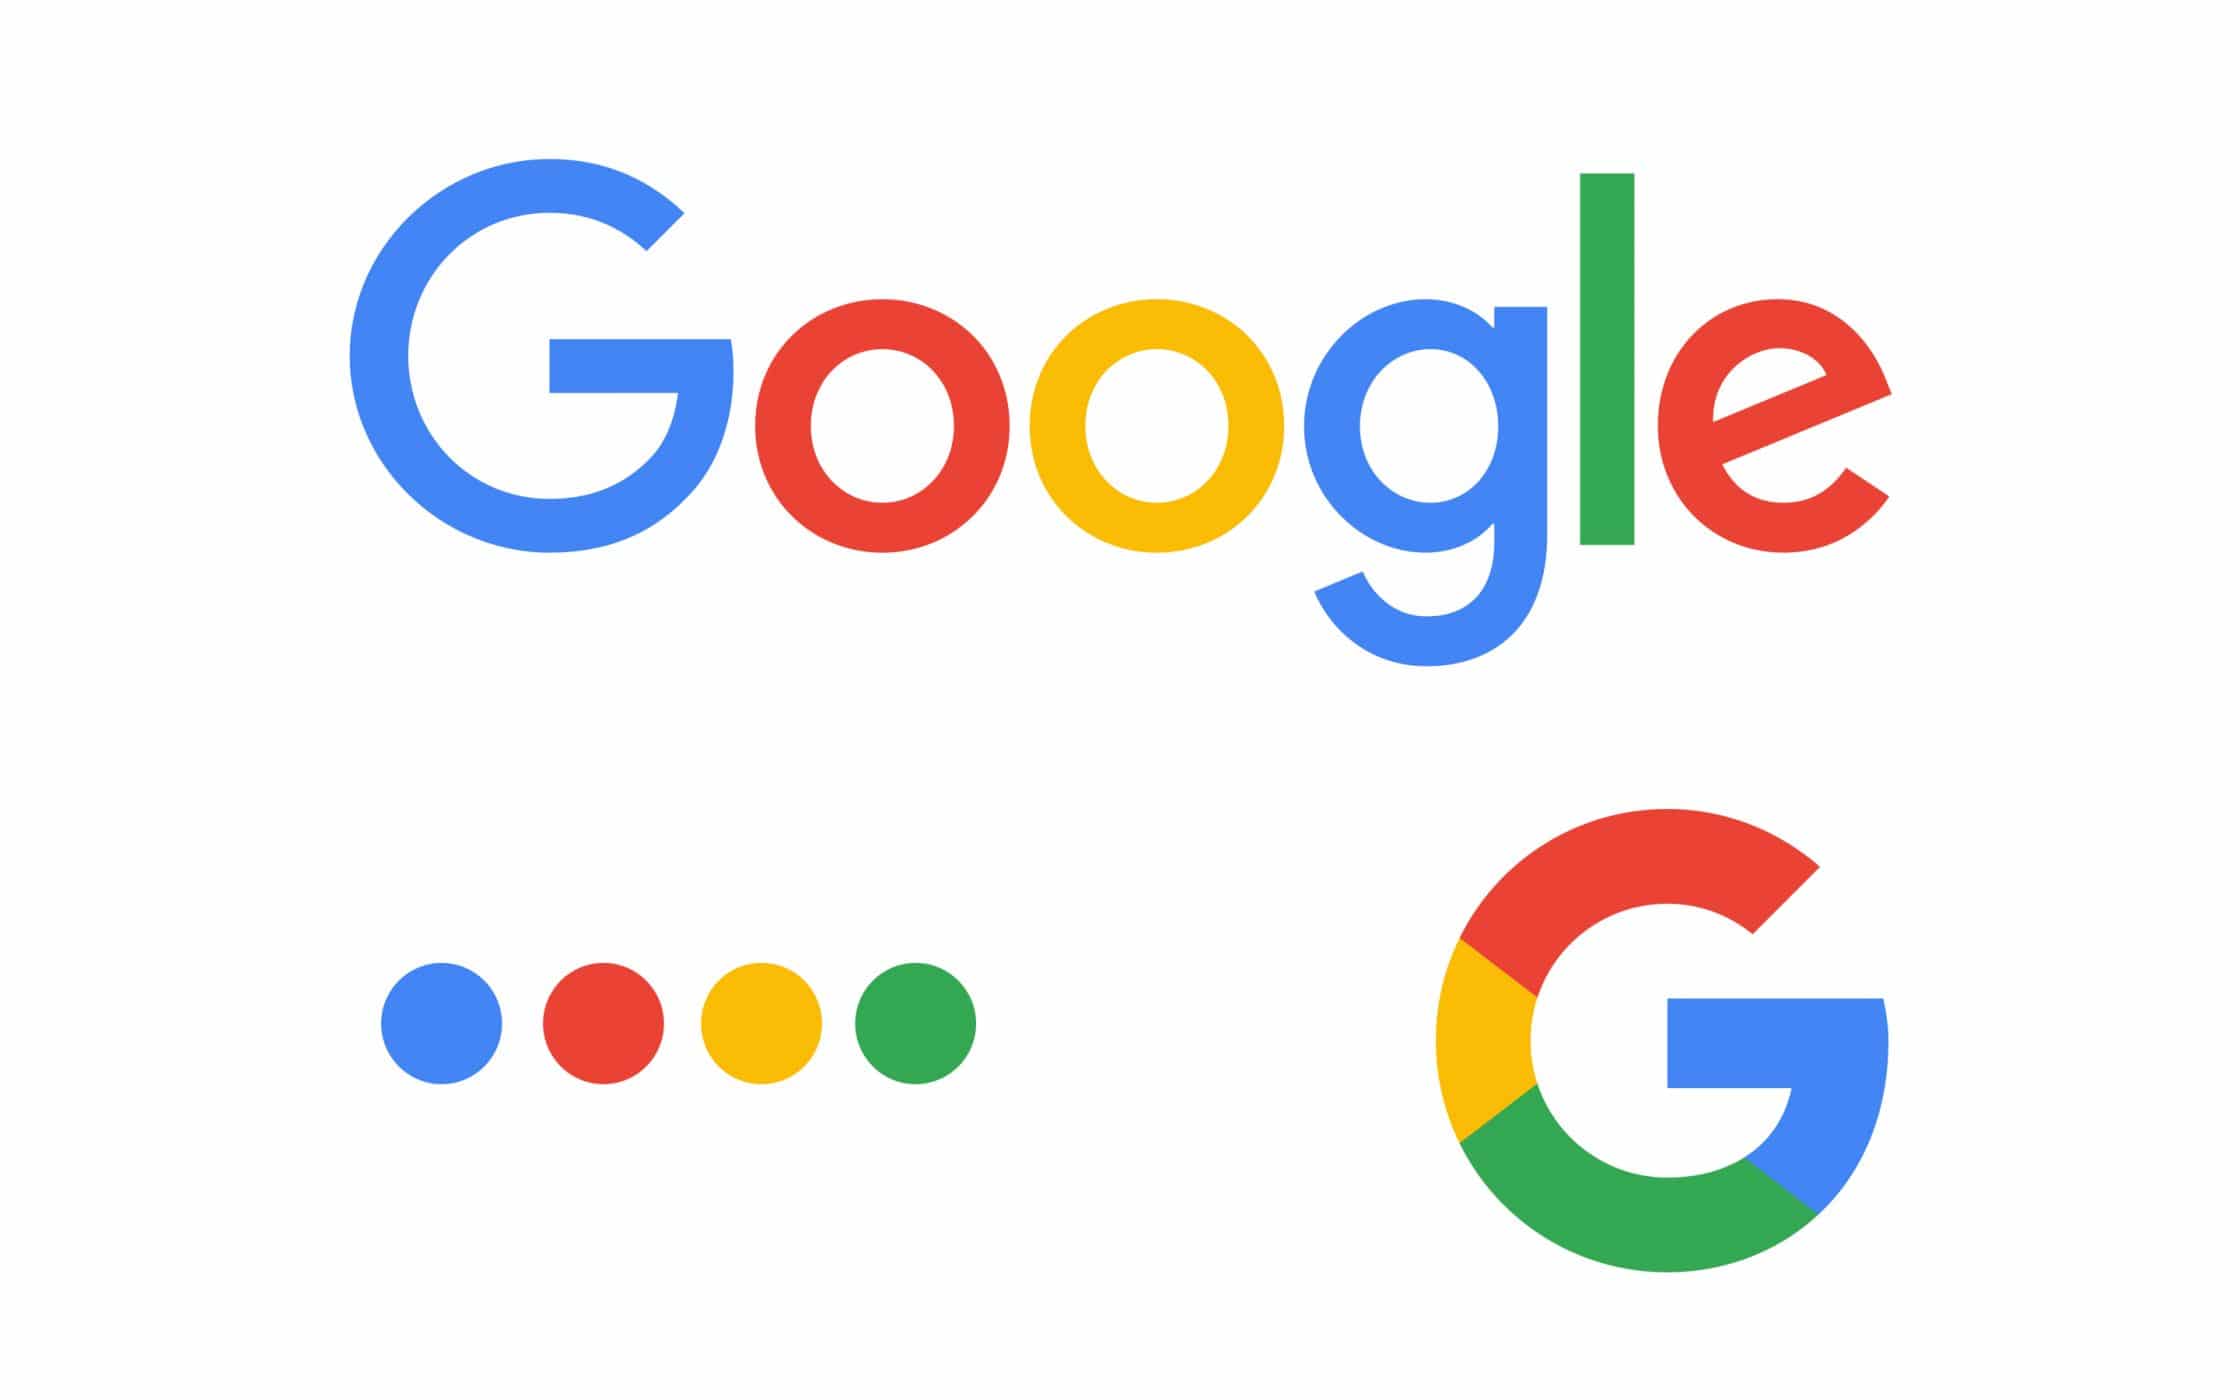 Tìm hiểu về logo of google và những bí mật ít người biết